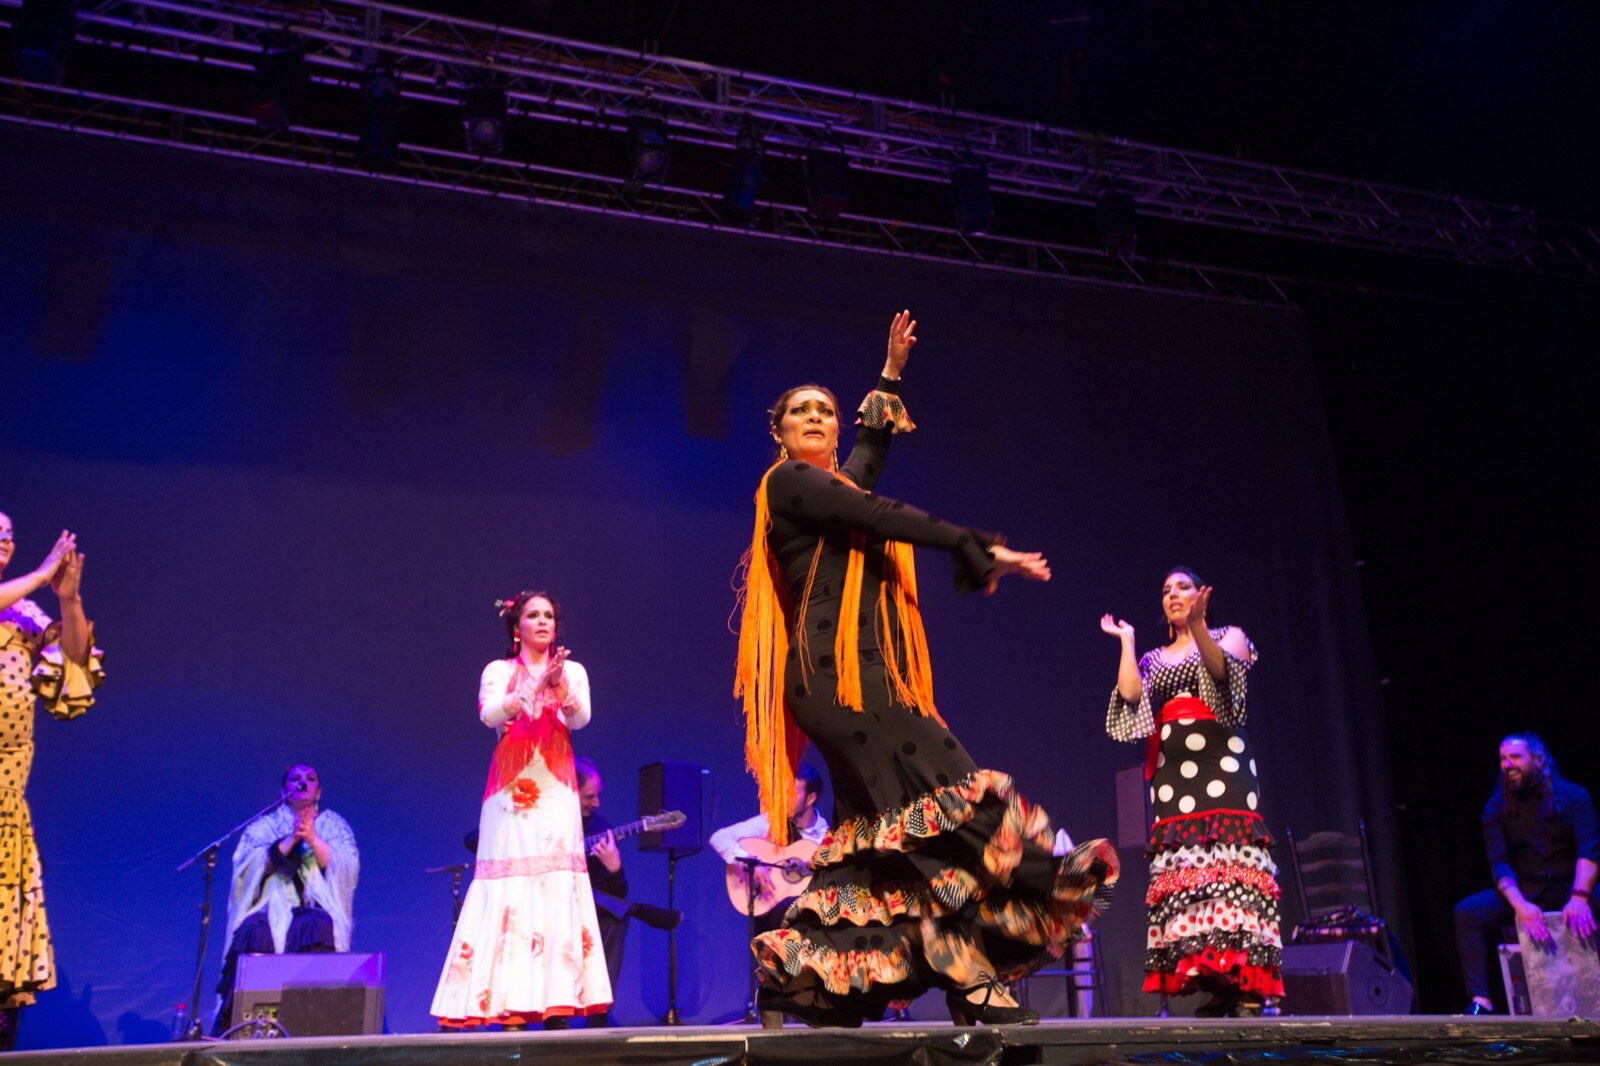 El Palacio de Congresos acogió uno de los grandes eventos flamencos previstos en 2019 con Manuel Santiago Maya como protagonista